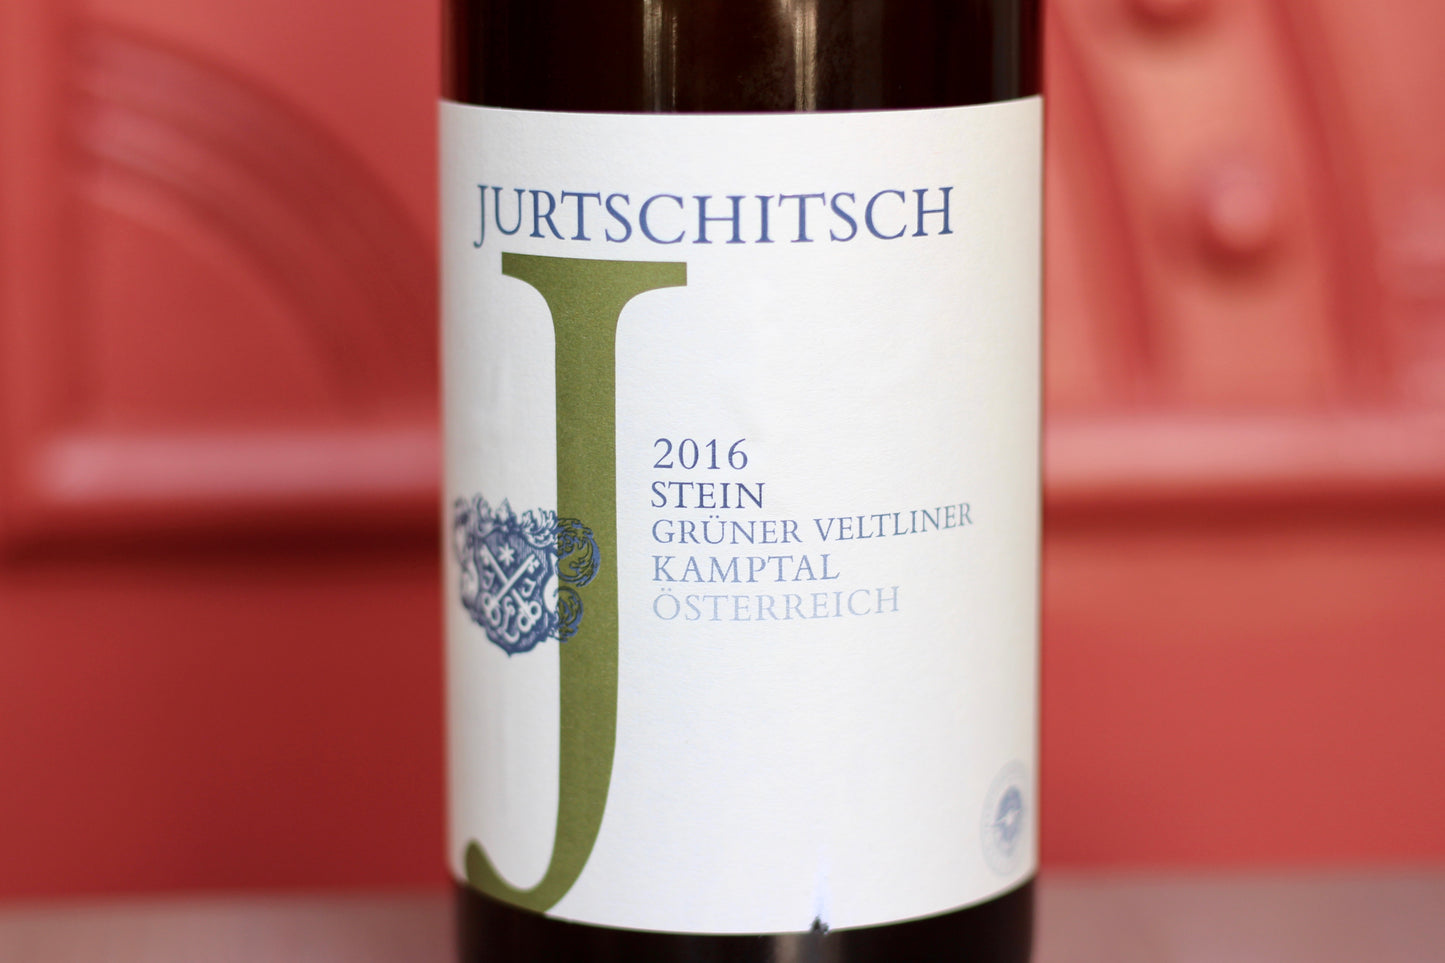 2016 Jurtschitsch ‘Stein’ Grüner Veltliner - Rock Juice Inc